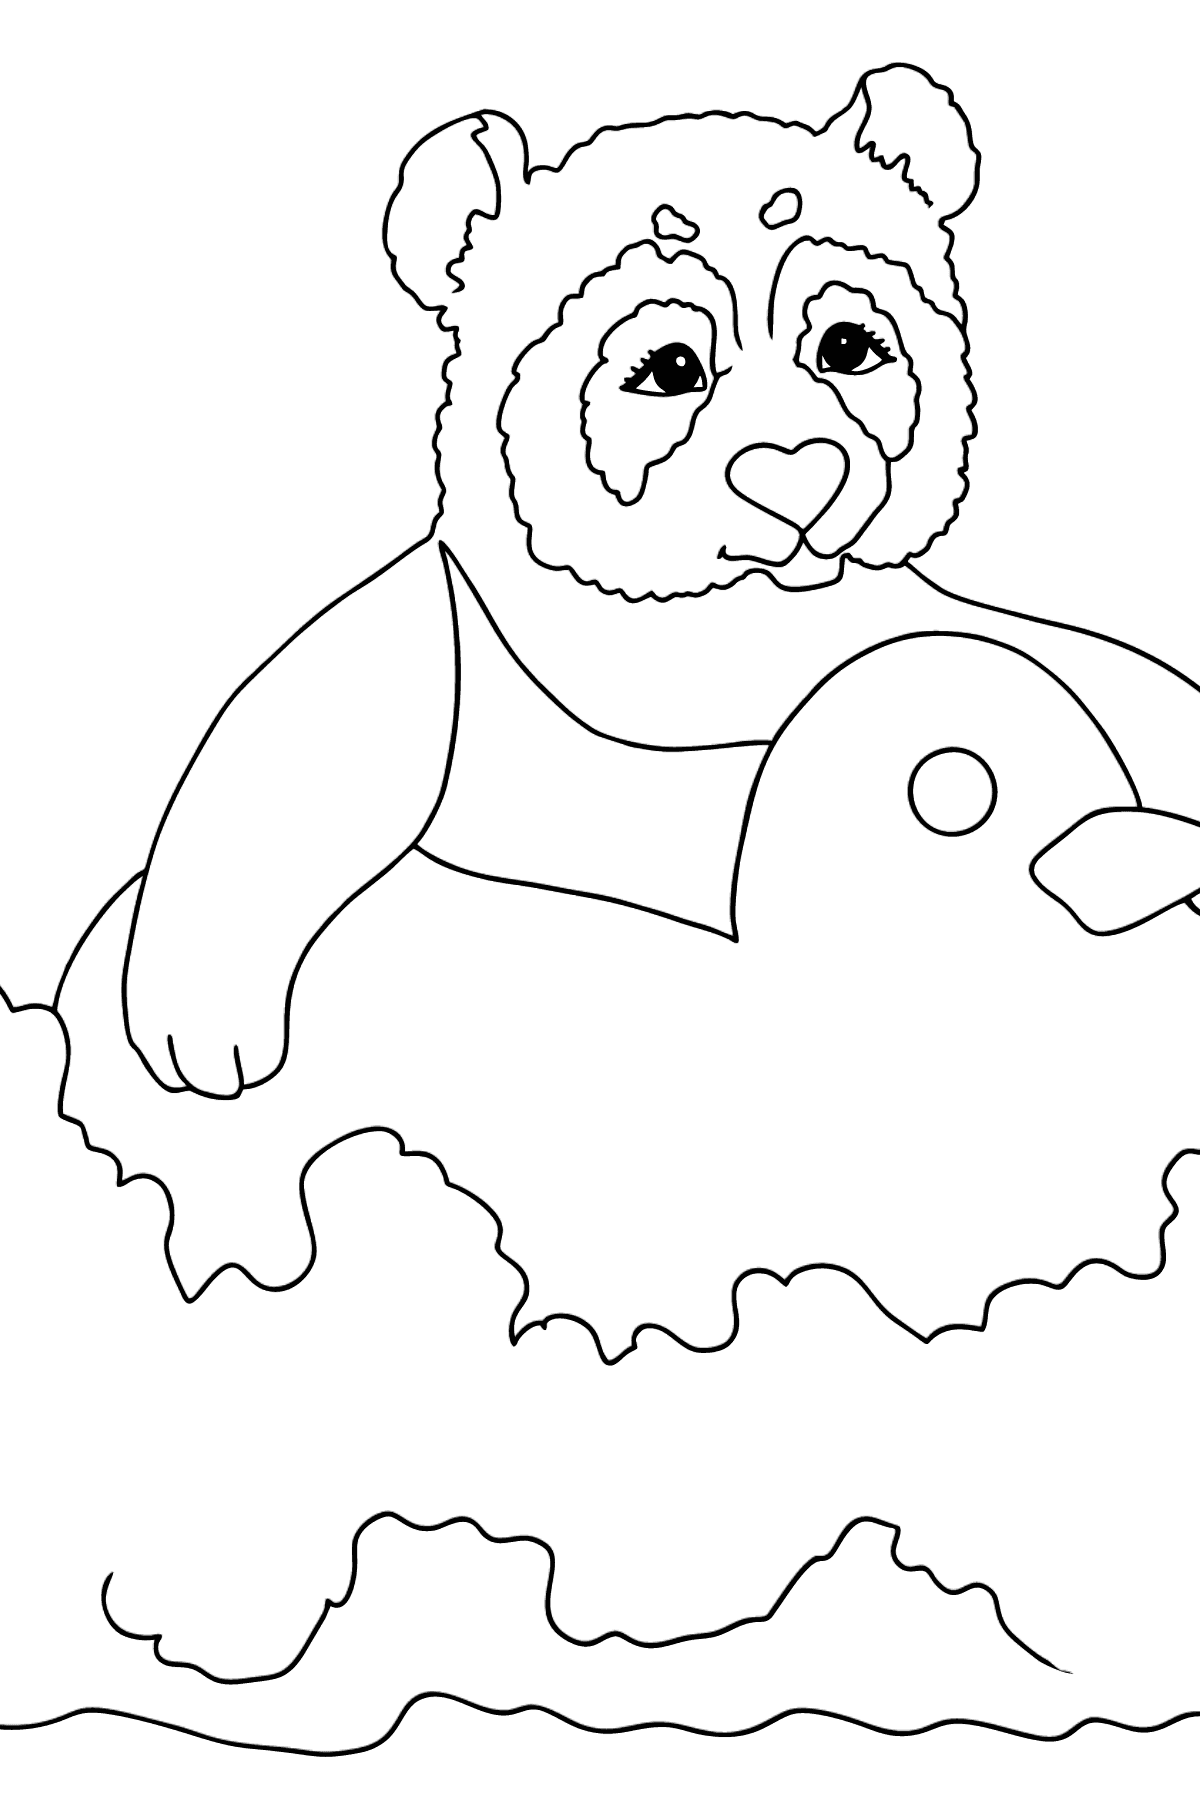 Boyama sayfası komik panda (basit) - Boyamalar çocuklar için